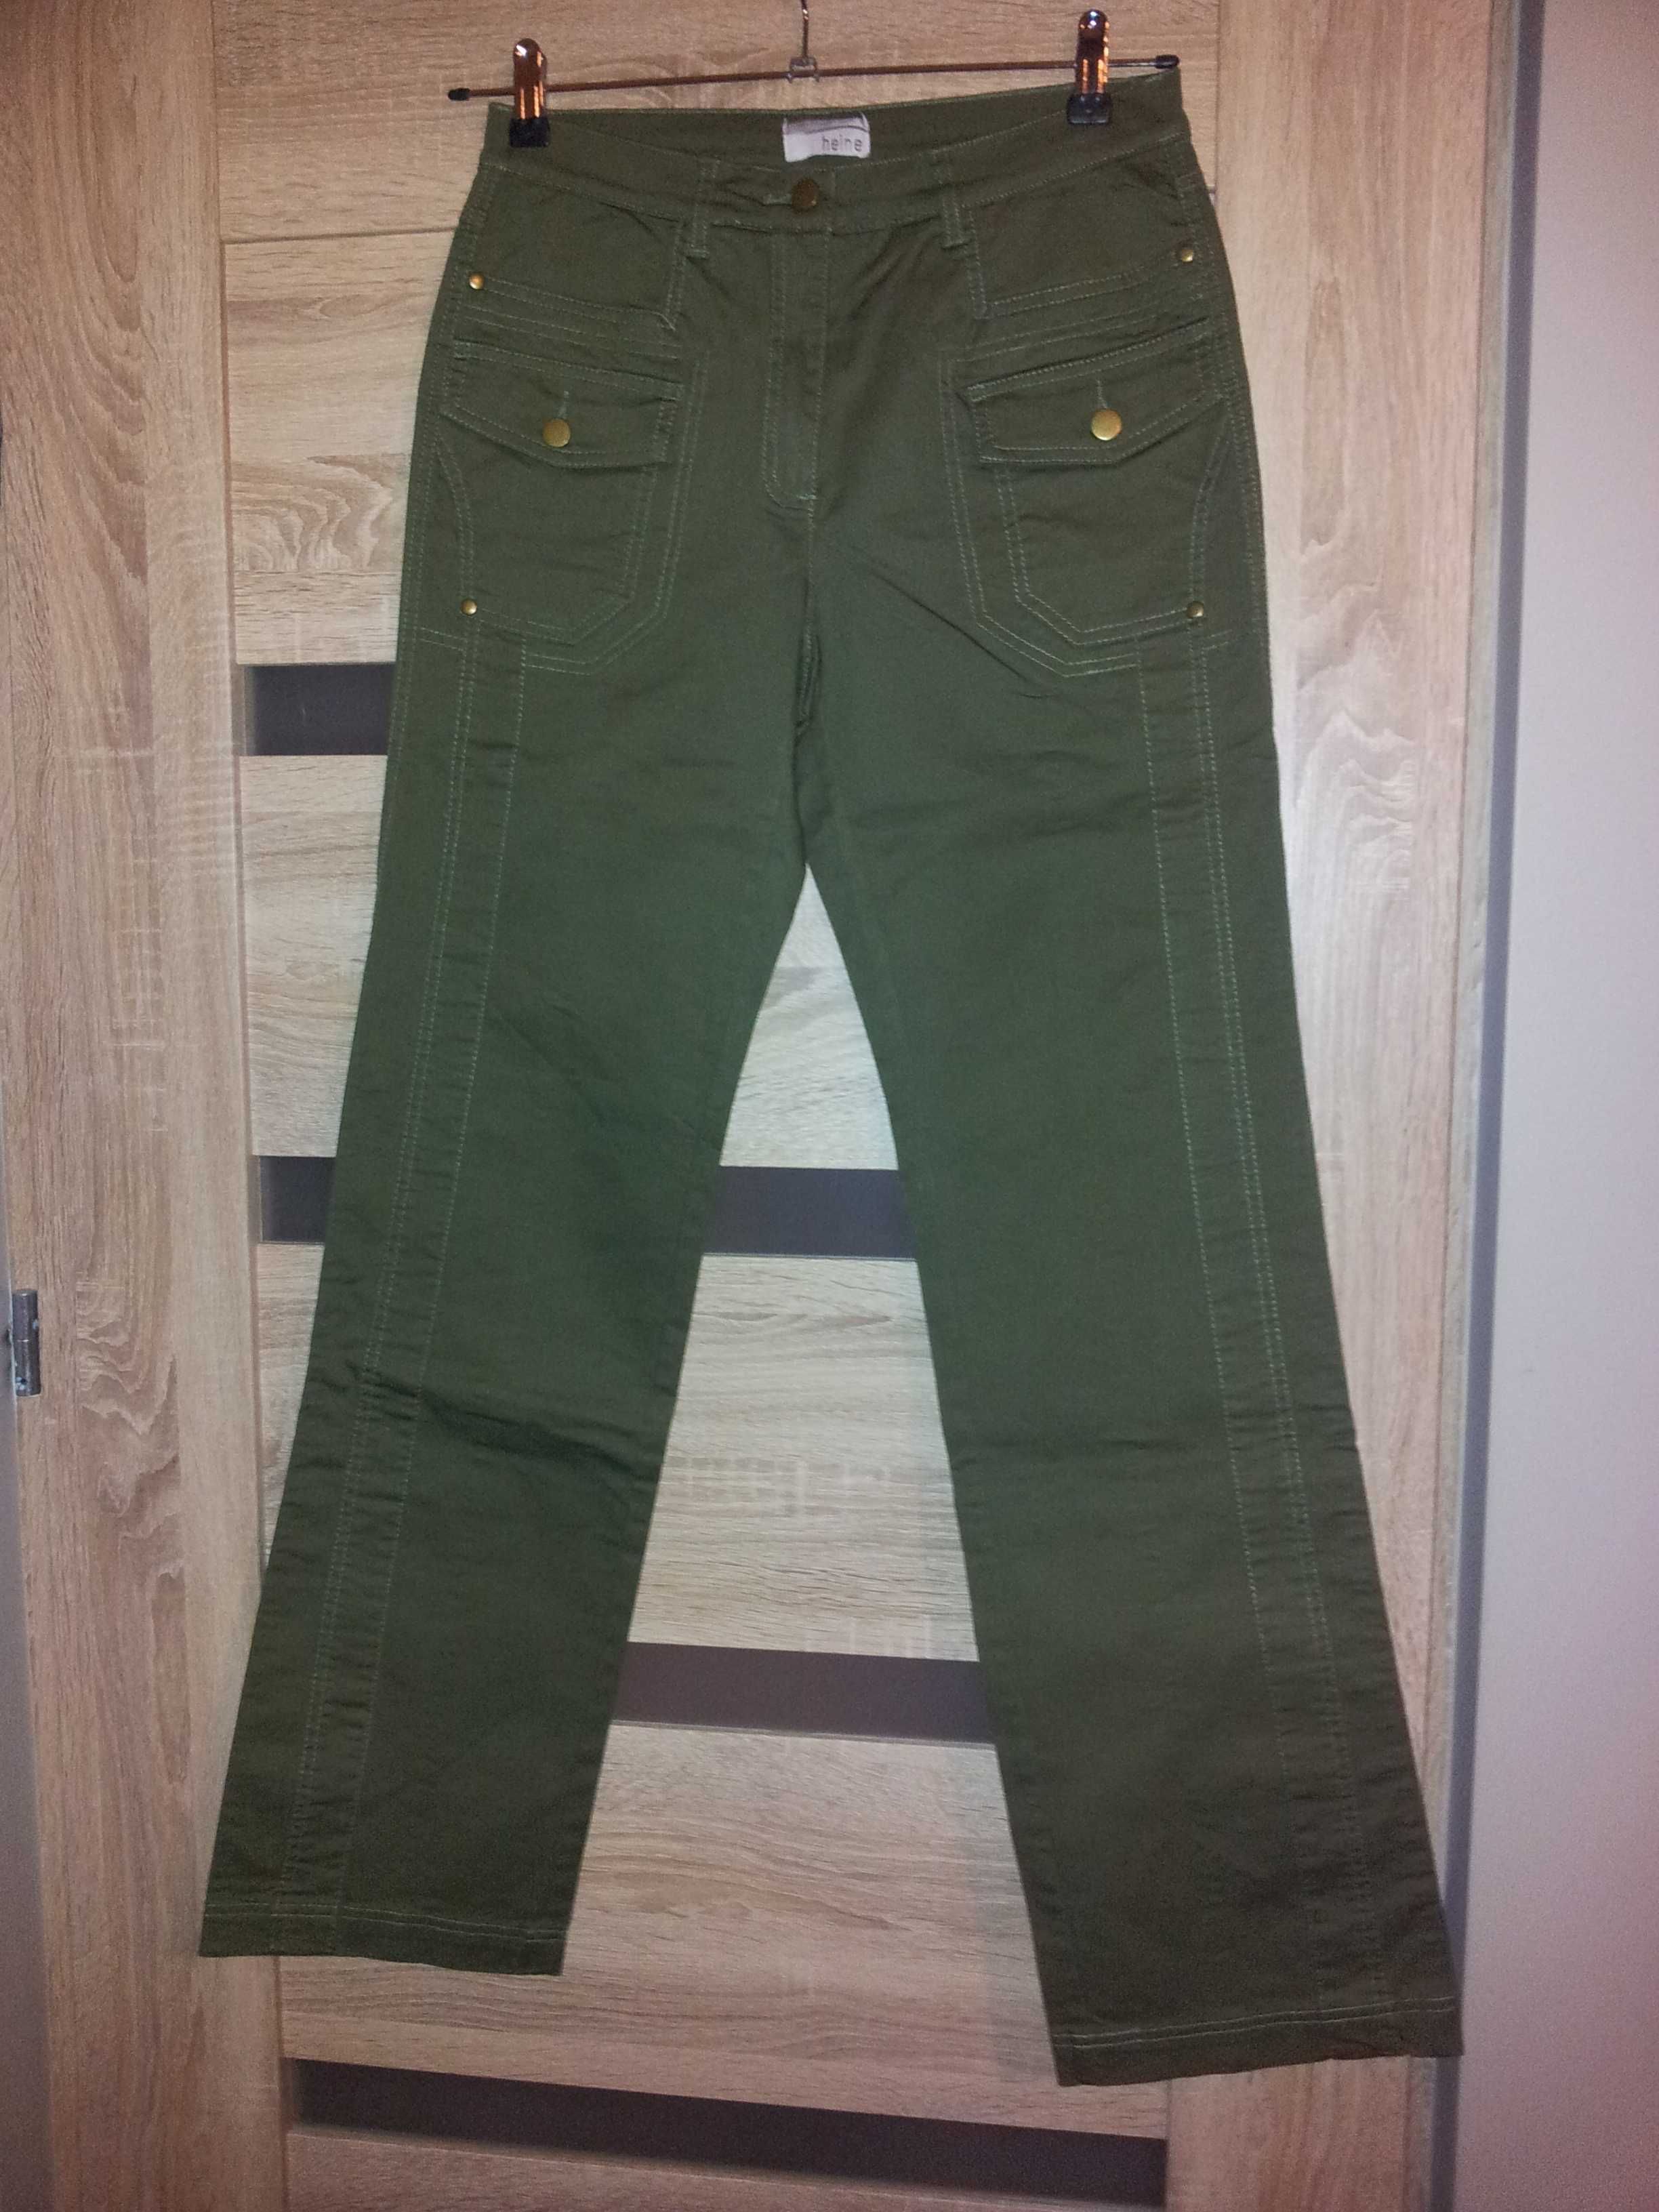 Zielone/khaki spodnie (Heine) r. 38